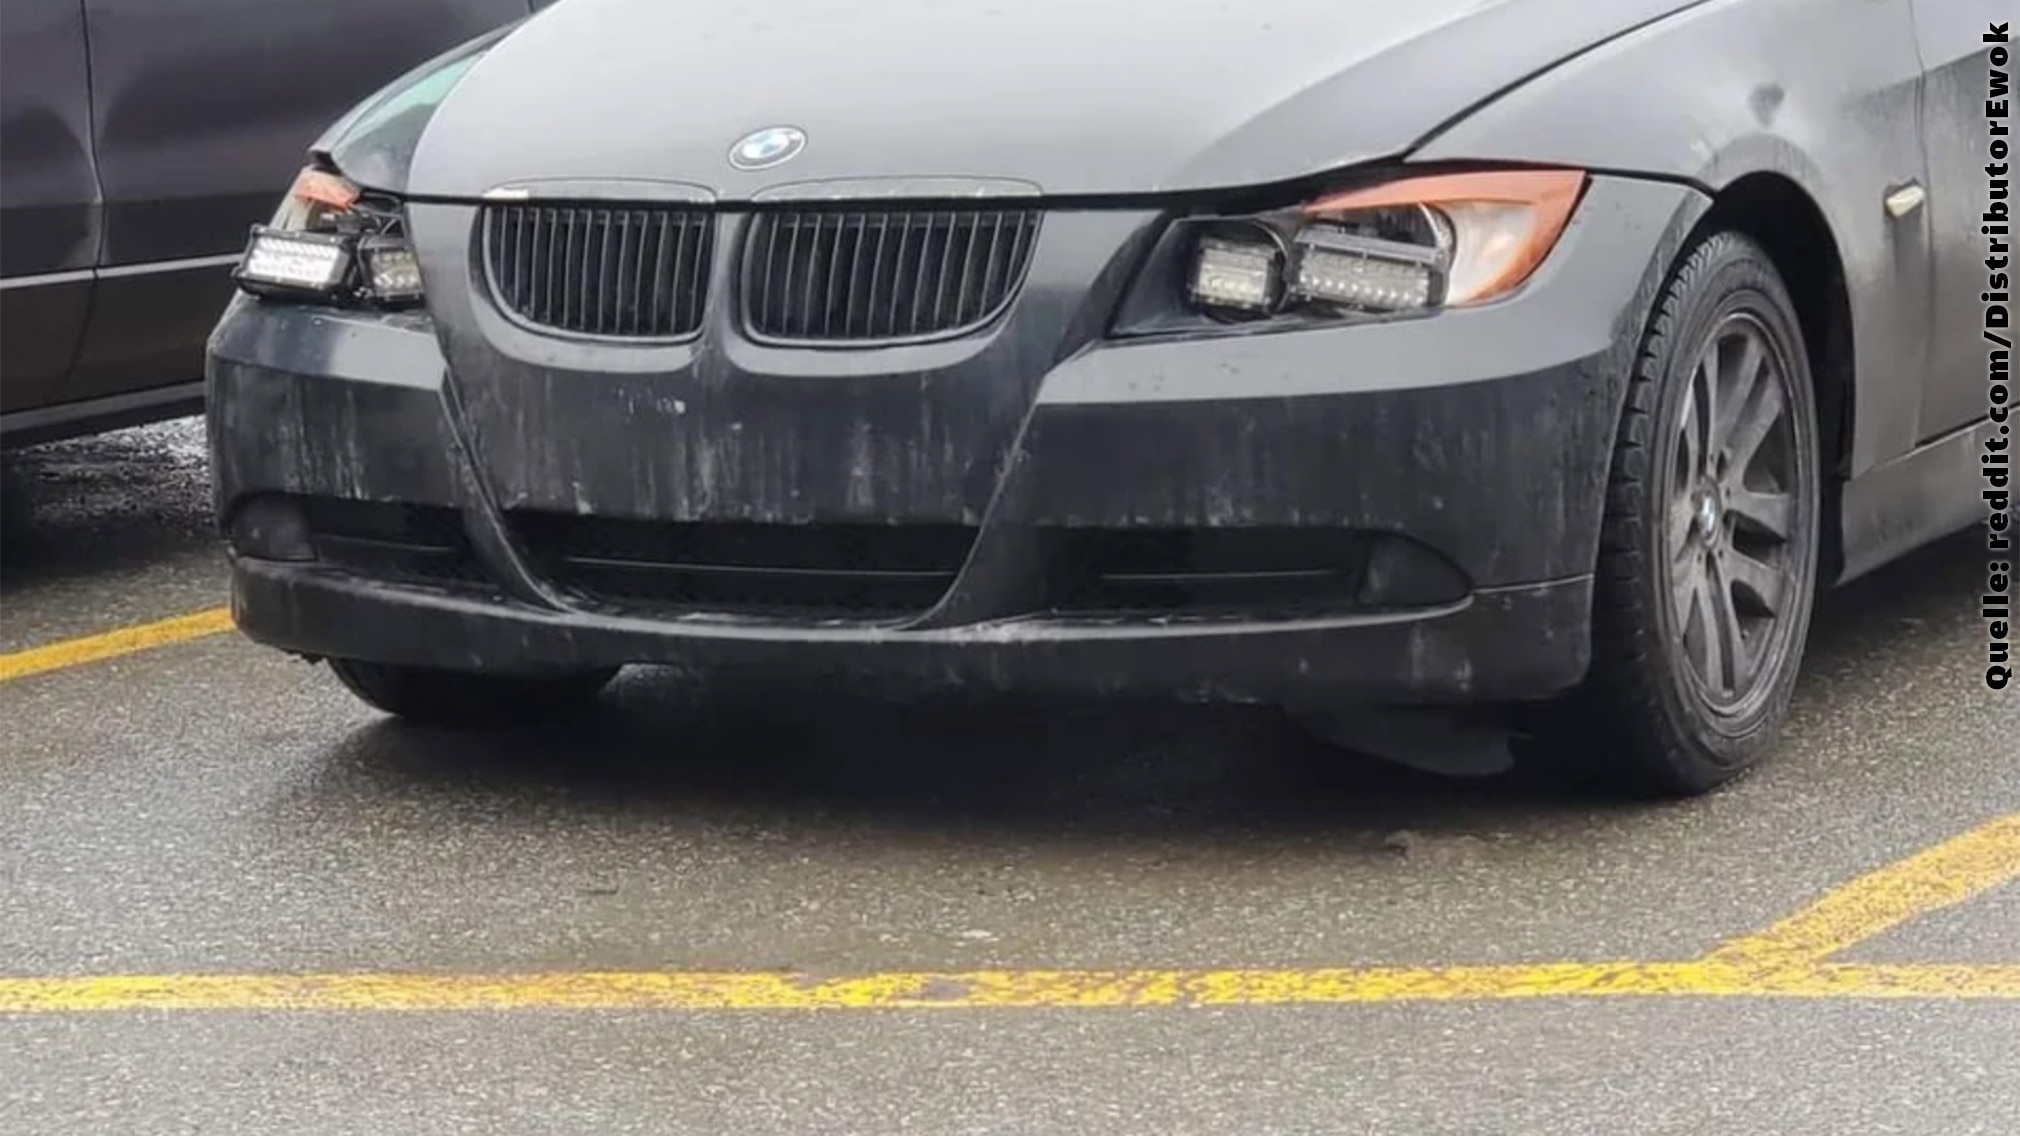 Schön ist anders: BMW 3er mit schlimmen Do-it-yourself-LEDs - AUTO